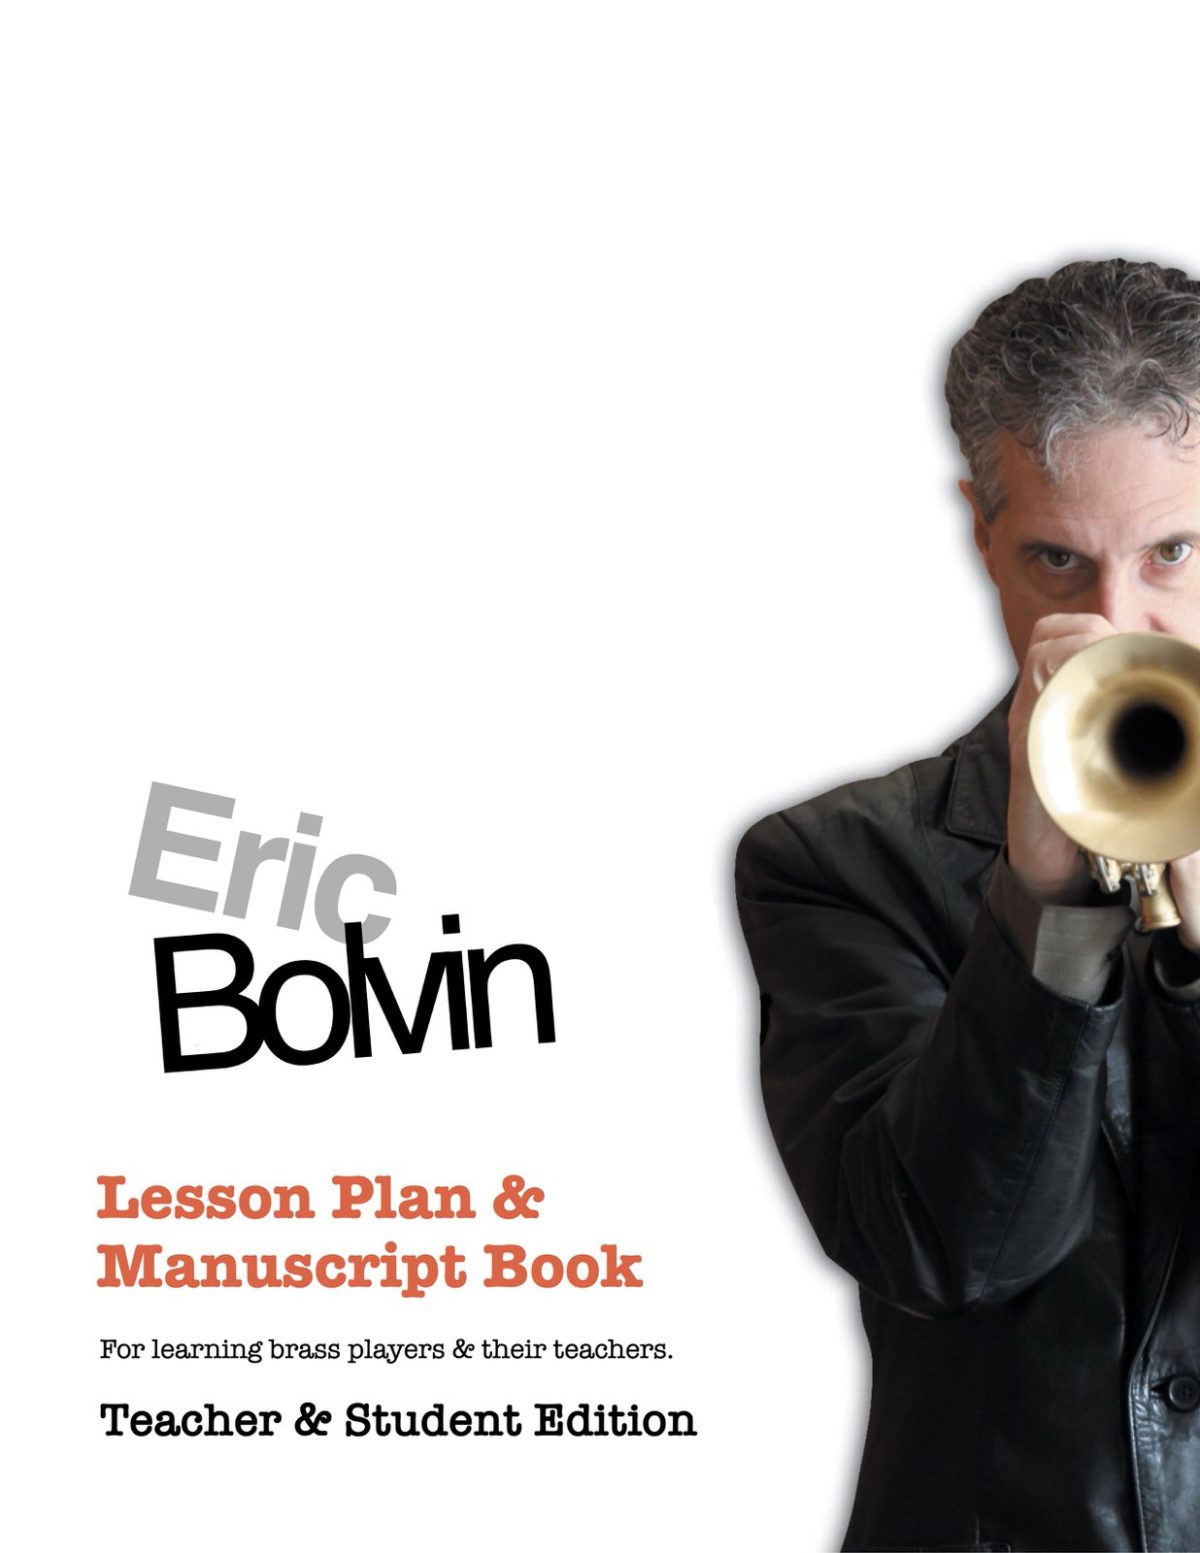 Lesson Plan & Manuscript